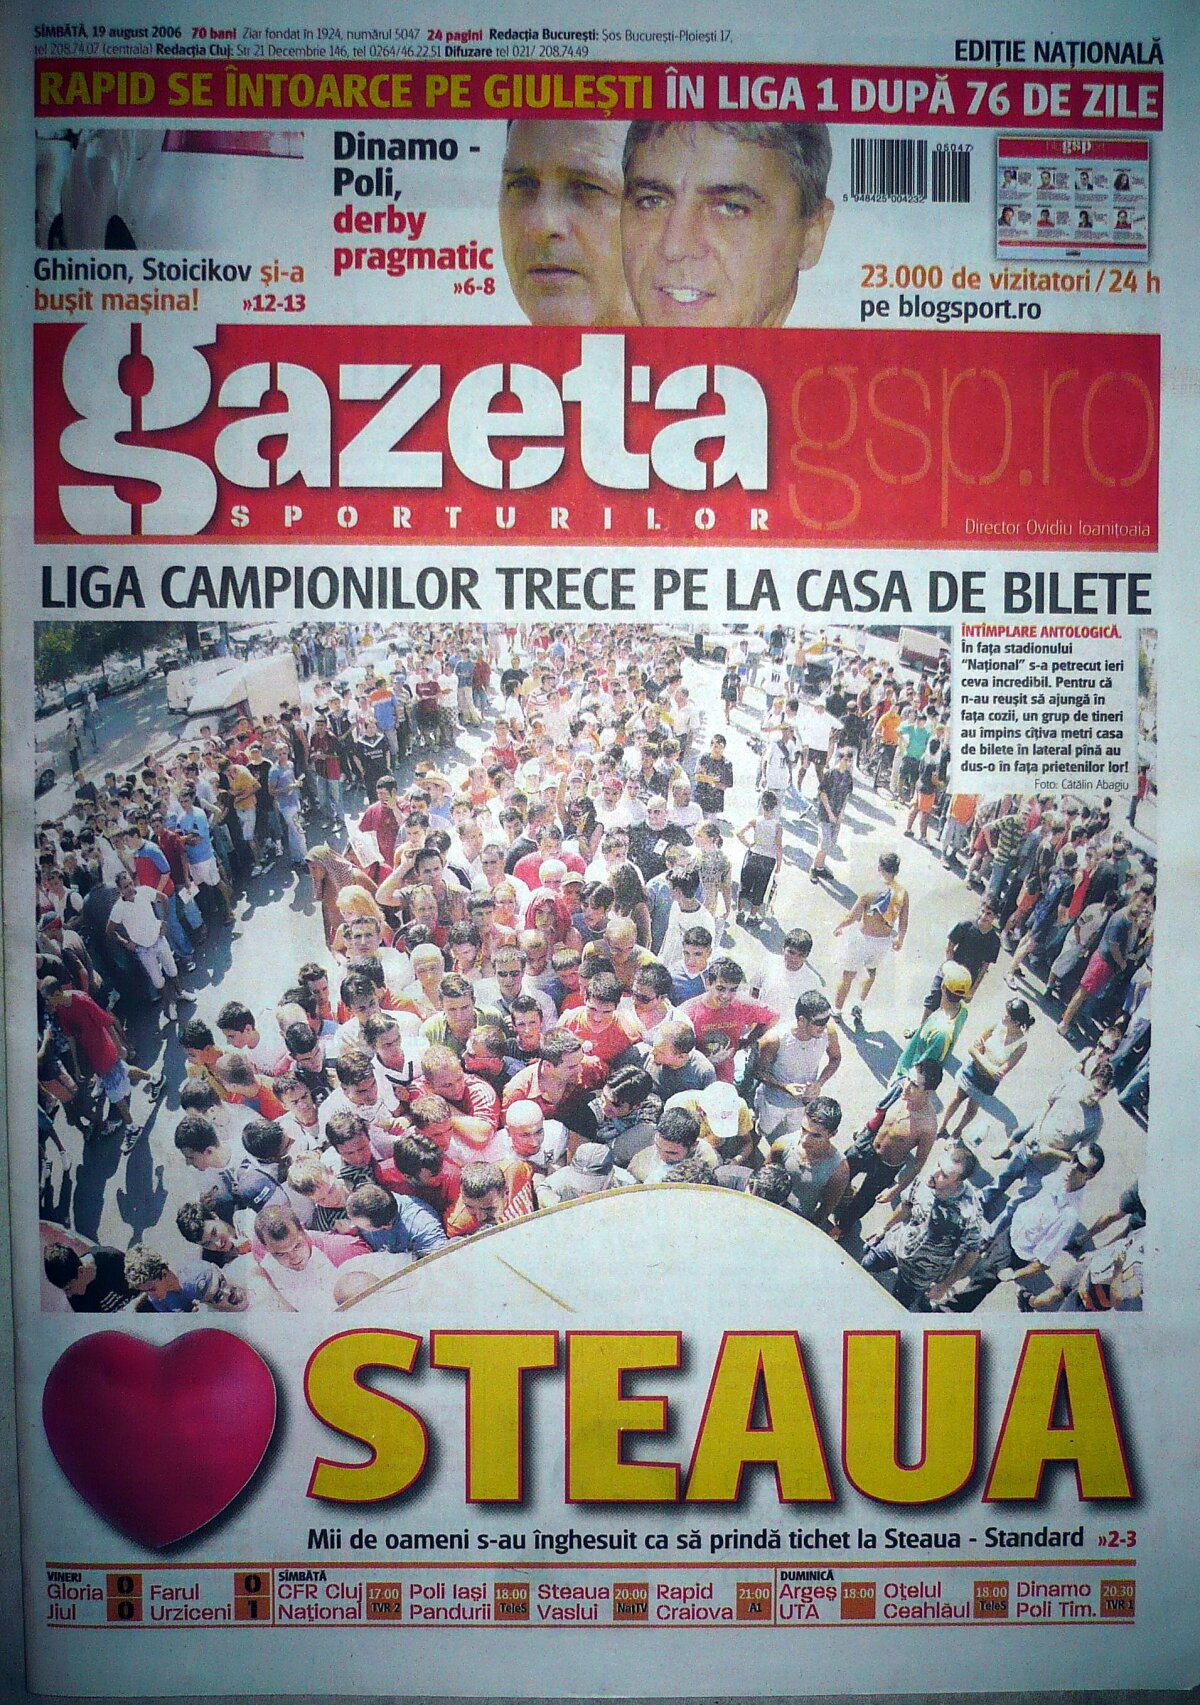 Mîine e Steaua - Legia » Arena va fi full cu stelişti, azi se vînd ultimele bilete! Copertă specială a Gazetei